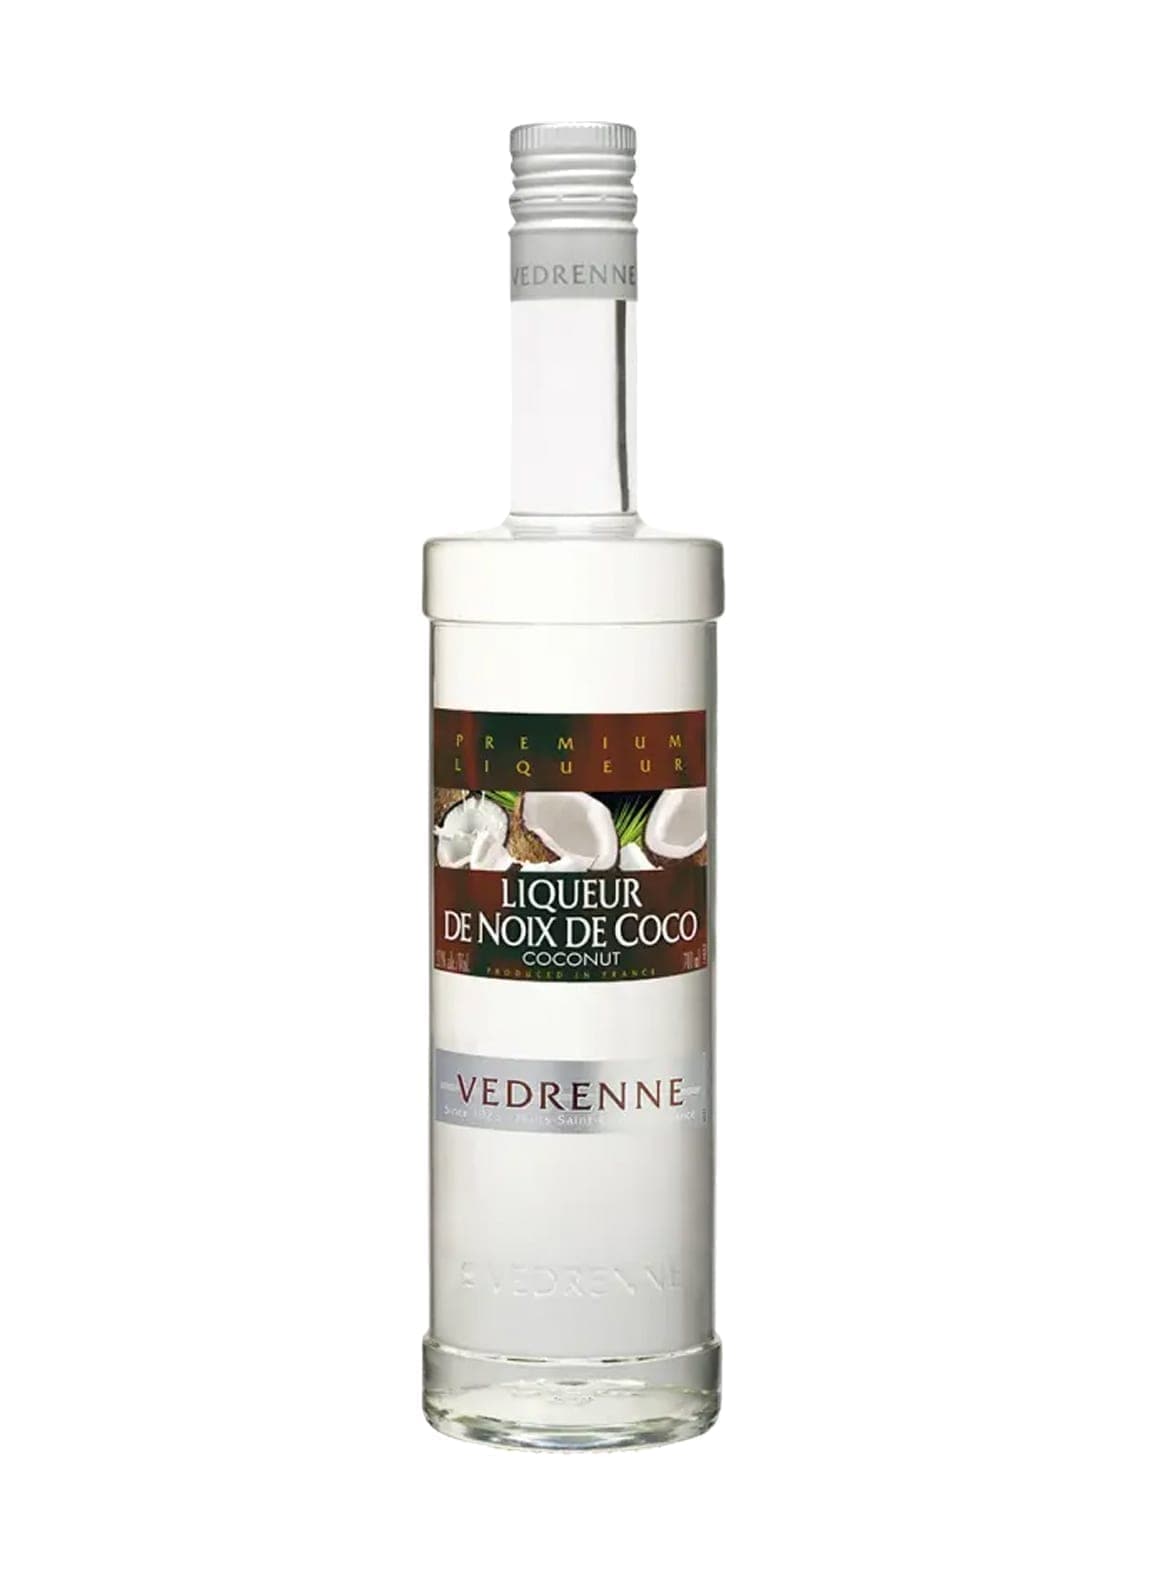 Vedrenne Coconut Liqueur 21% 700ml | Liquor & Spirits | Shop online at Spirits of France